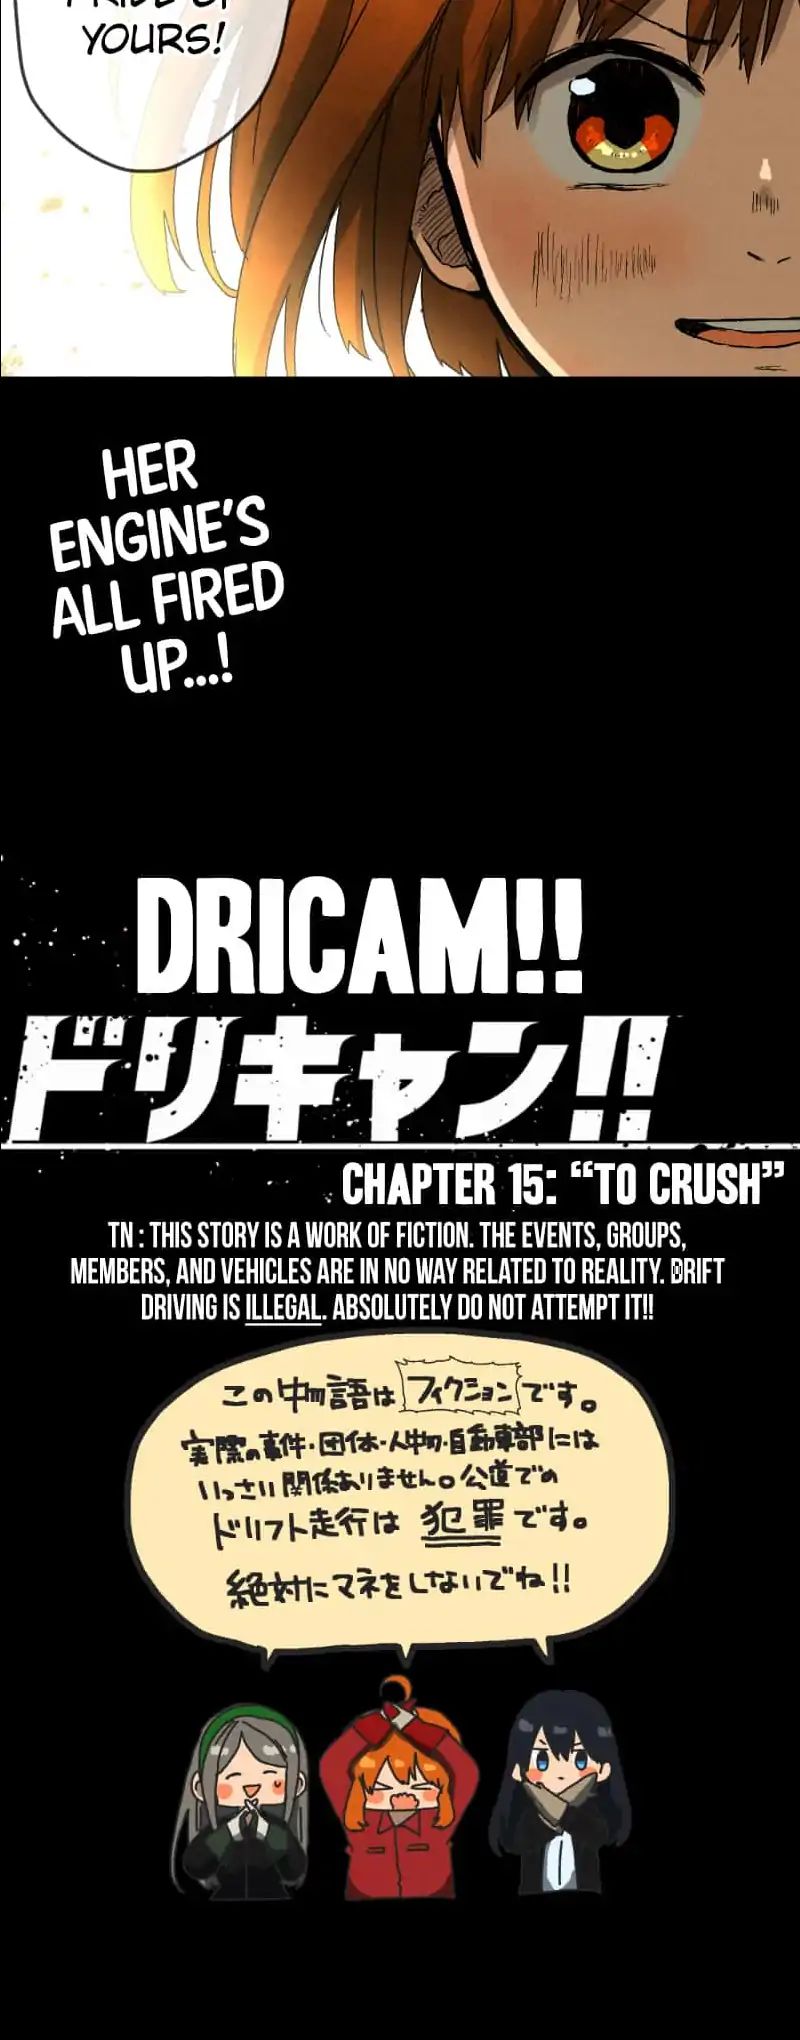 Dricam!! Chapter 15: To Crush